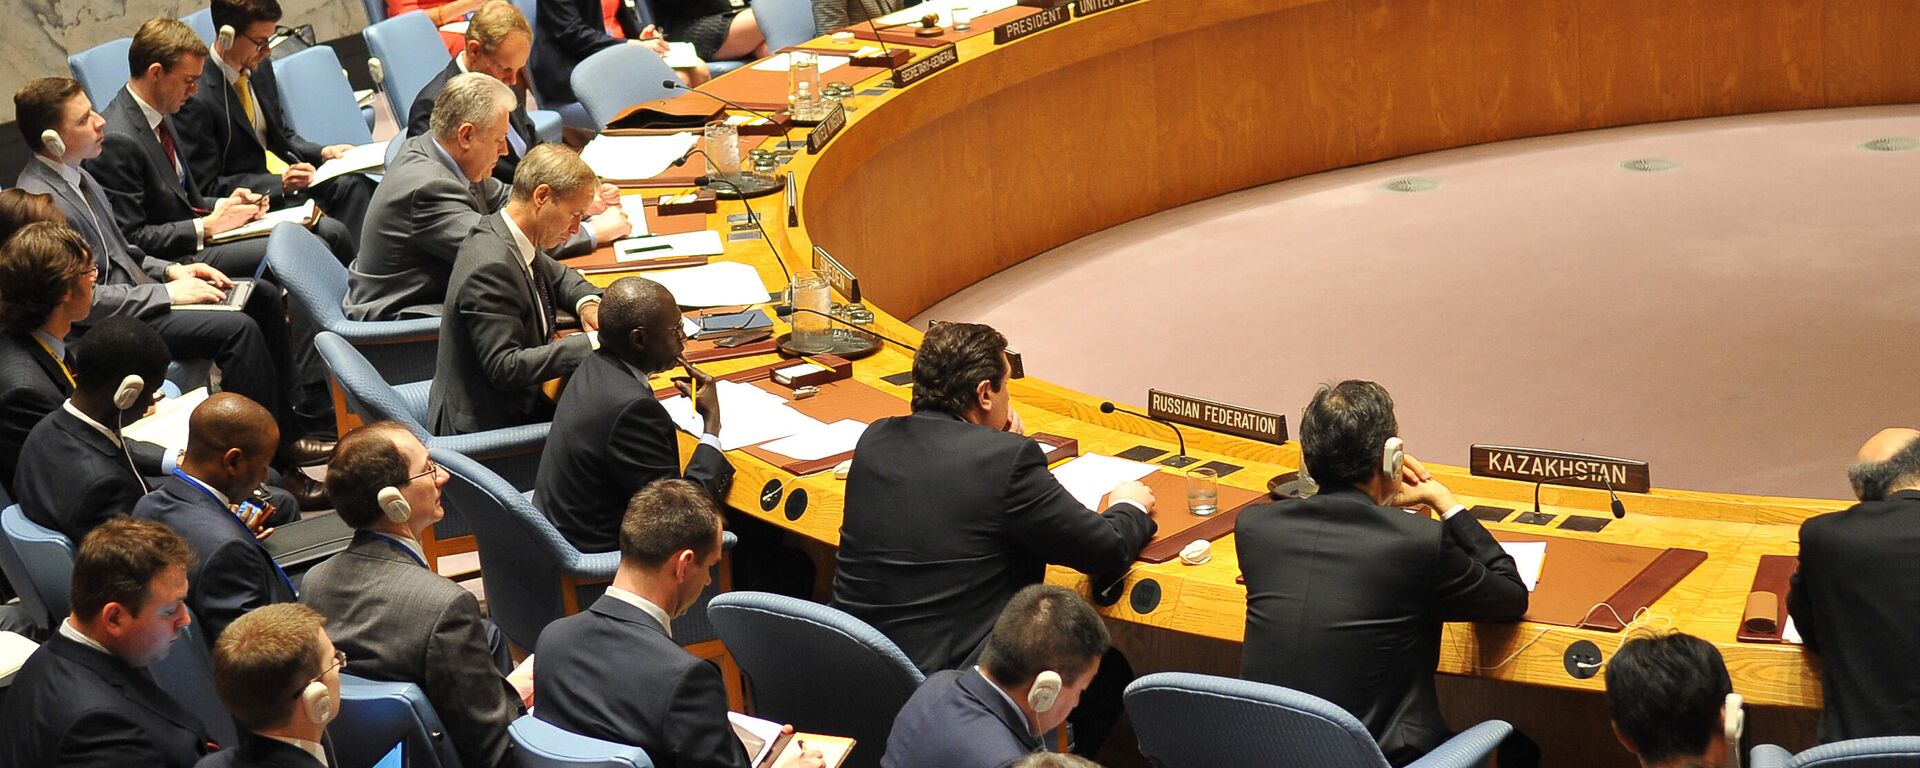 Reunião do Conselho de Segurança da ONU (Organização das Nações Unidas) em Nova York, nos EUA, em 12 de abril de 2017 - Sputnik Brasil, 1920, 12.01.2022